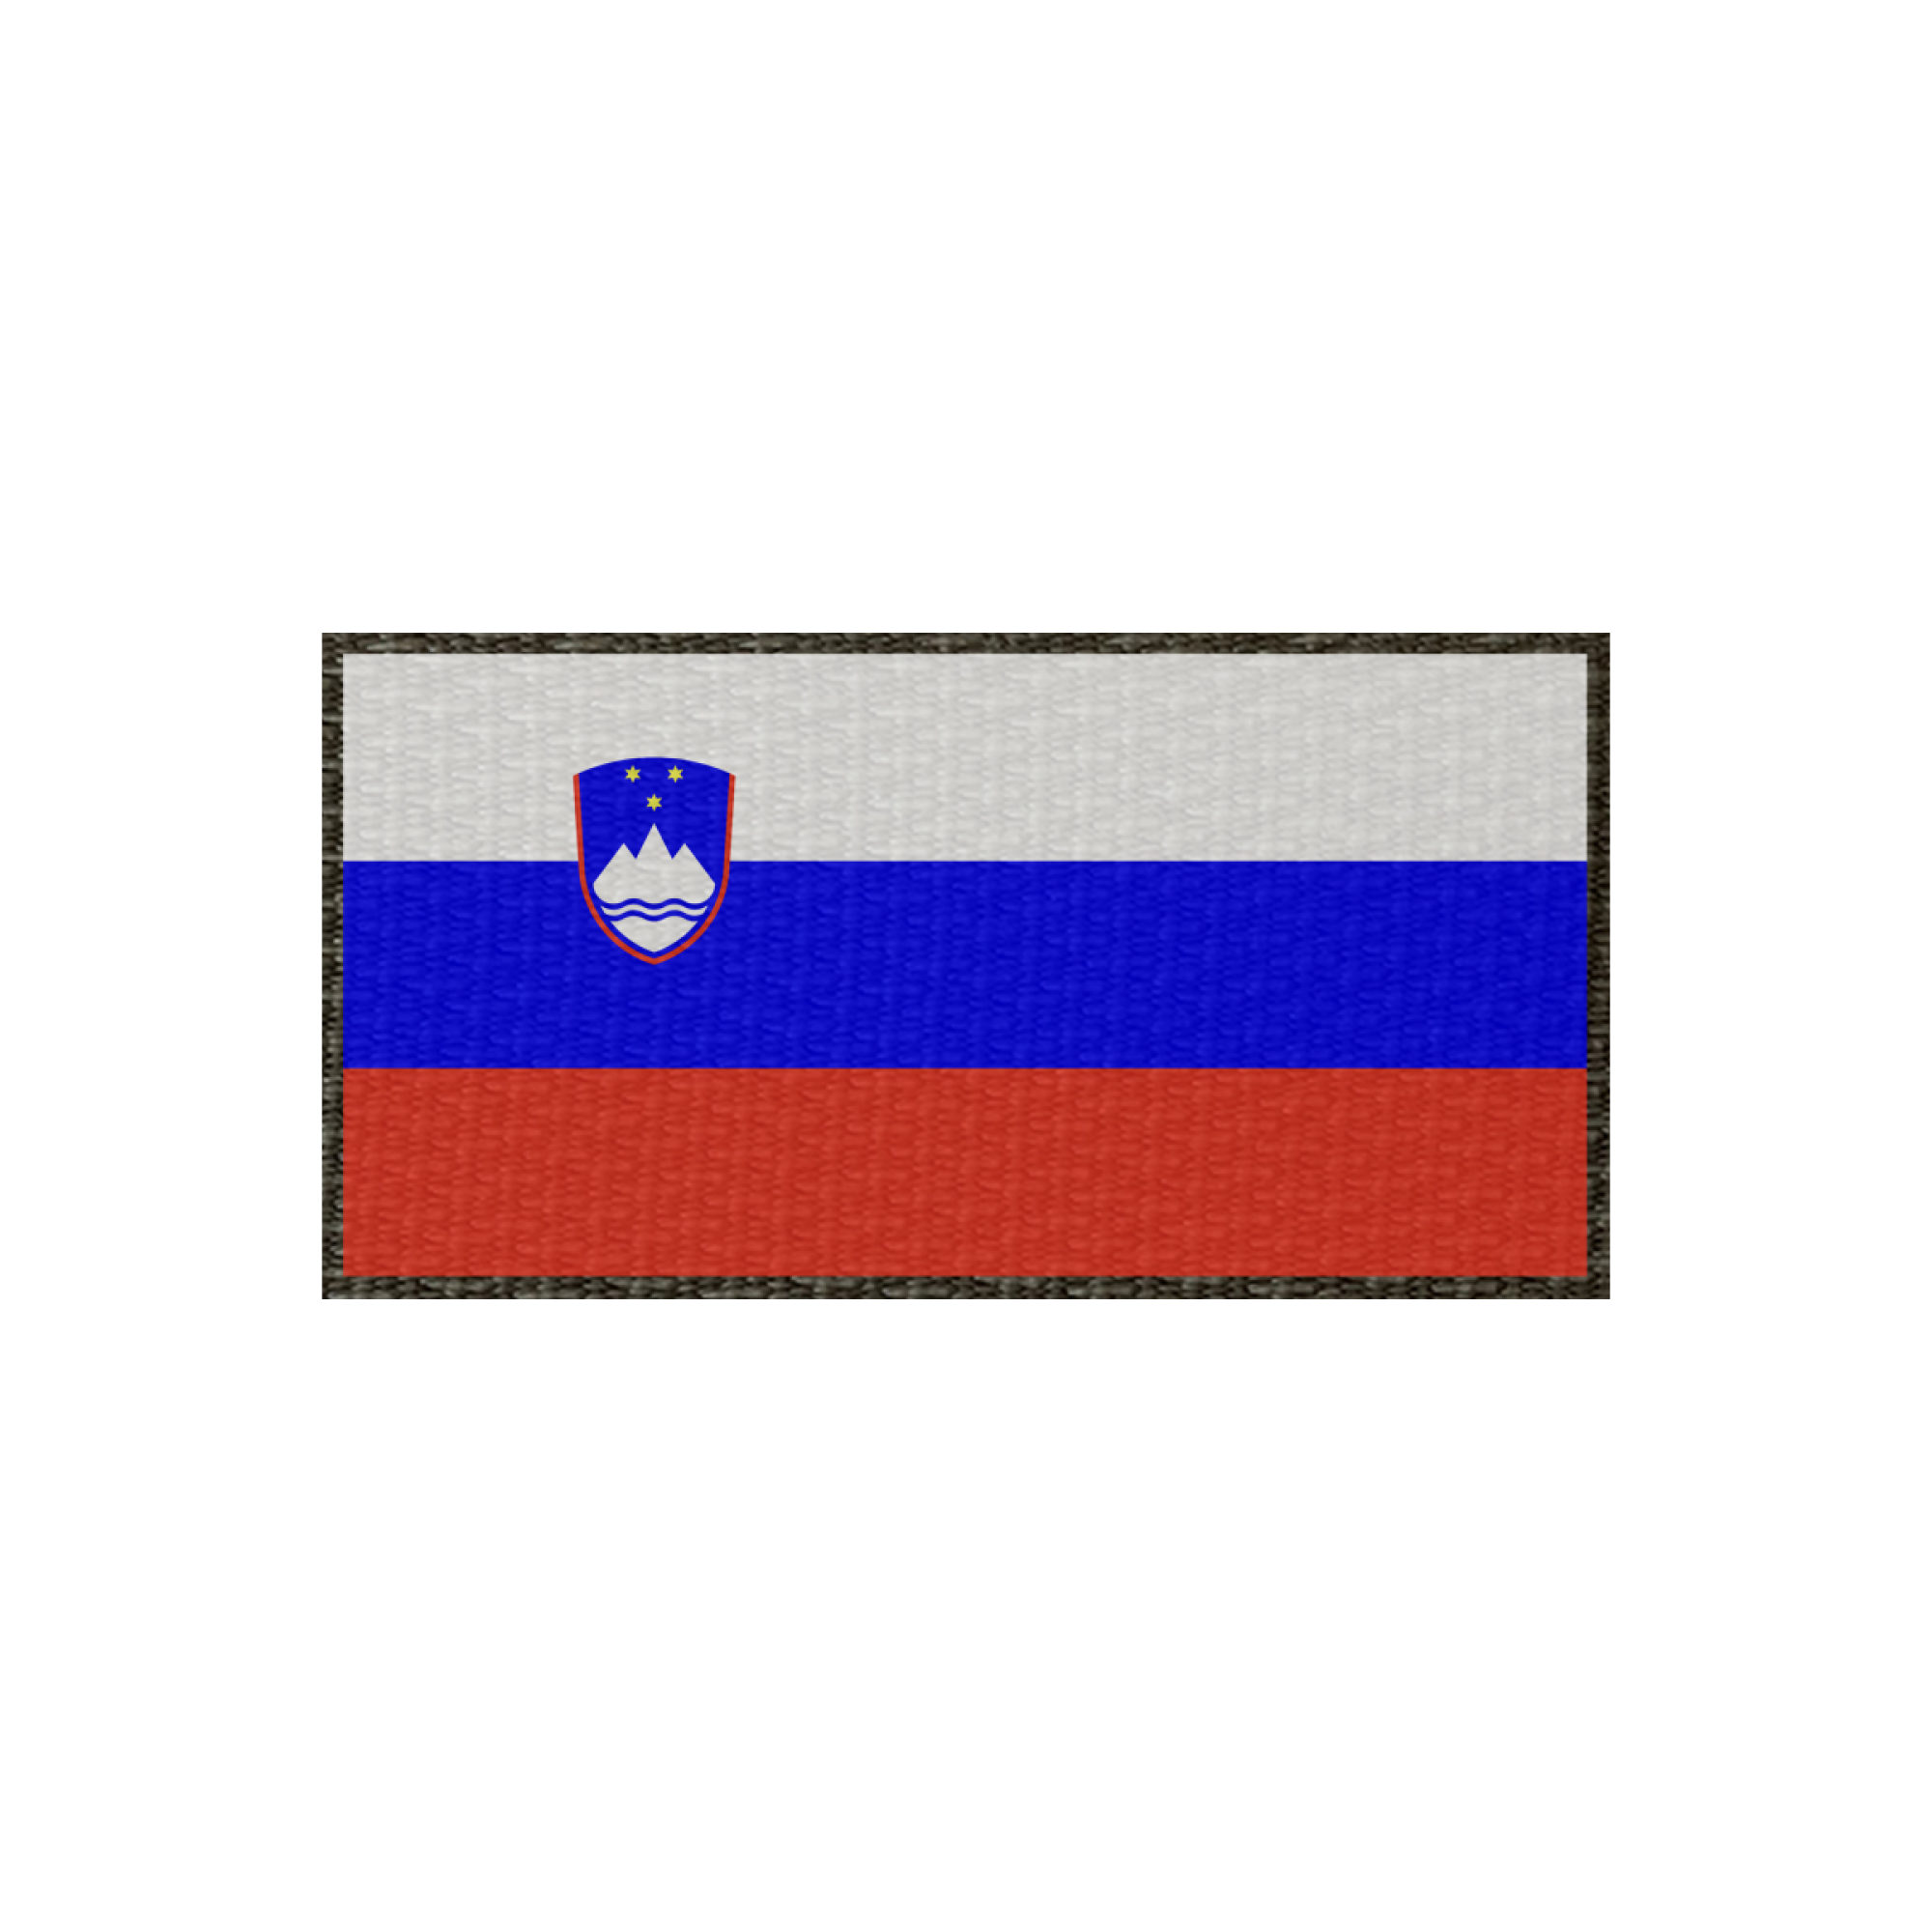 Patch Flagge Slowenien 100x50mm, Klett